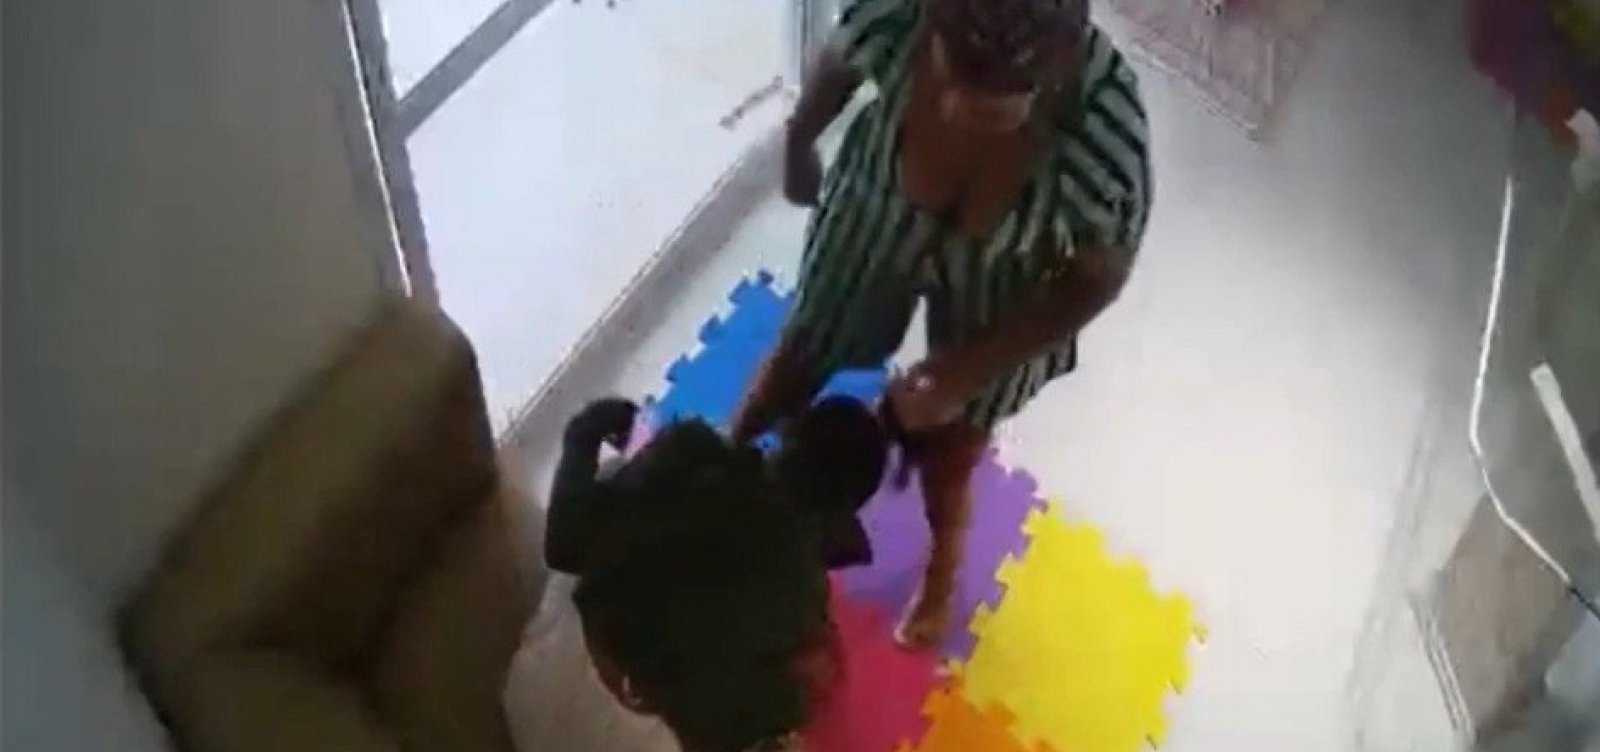 Vídeo mostra ex-patroa agredindo babá que pulou de prédio em Salvador